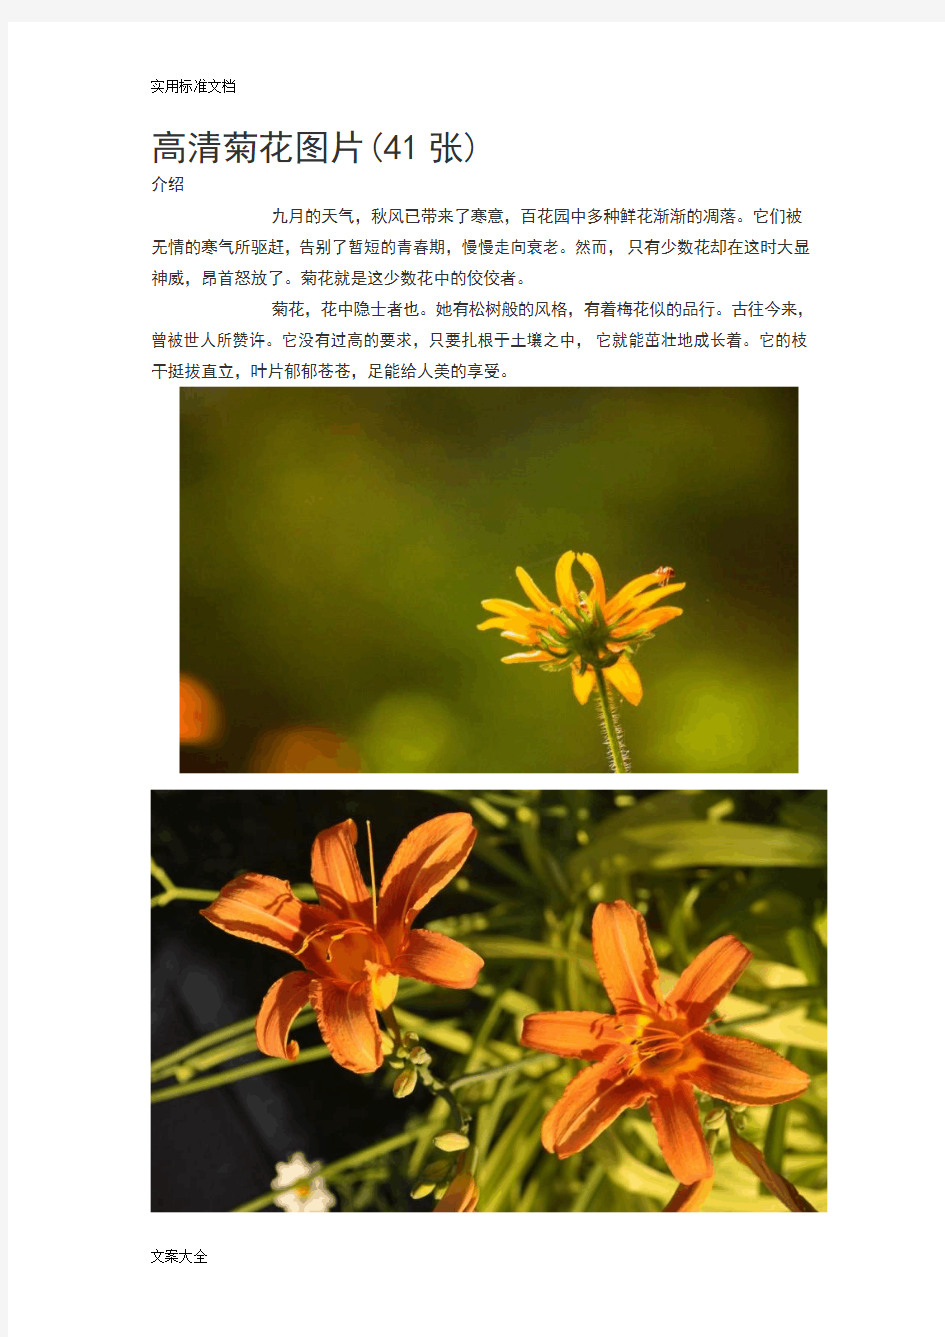 高清菊花图片(41张)